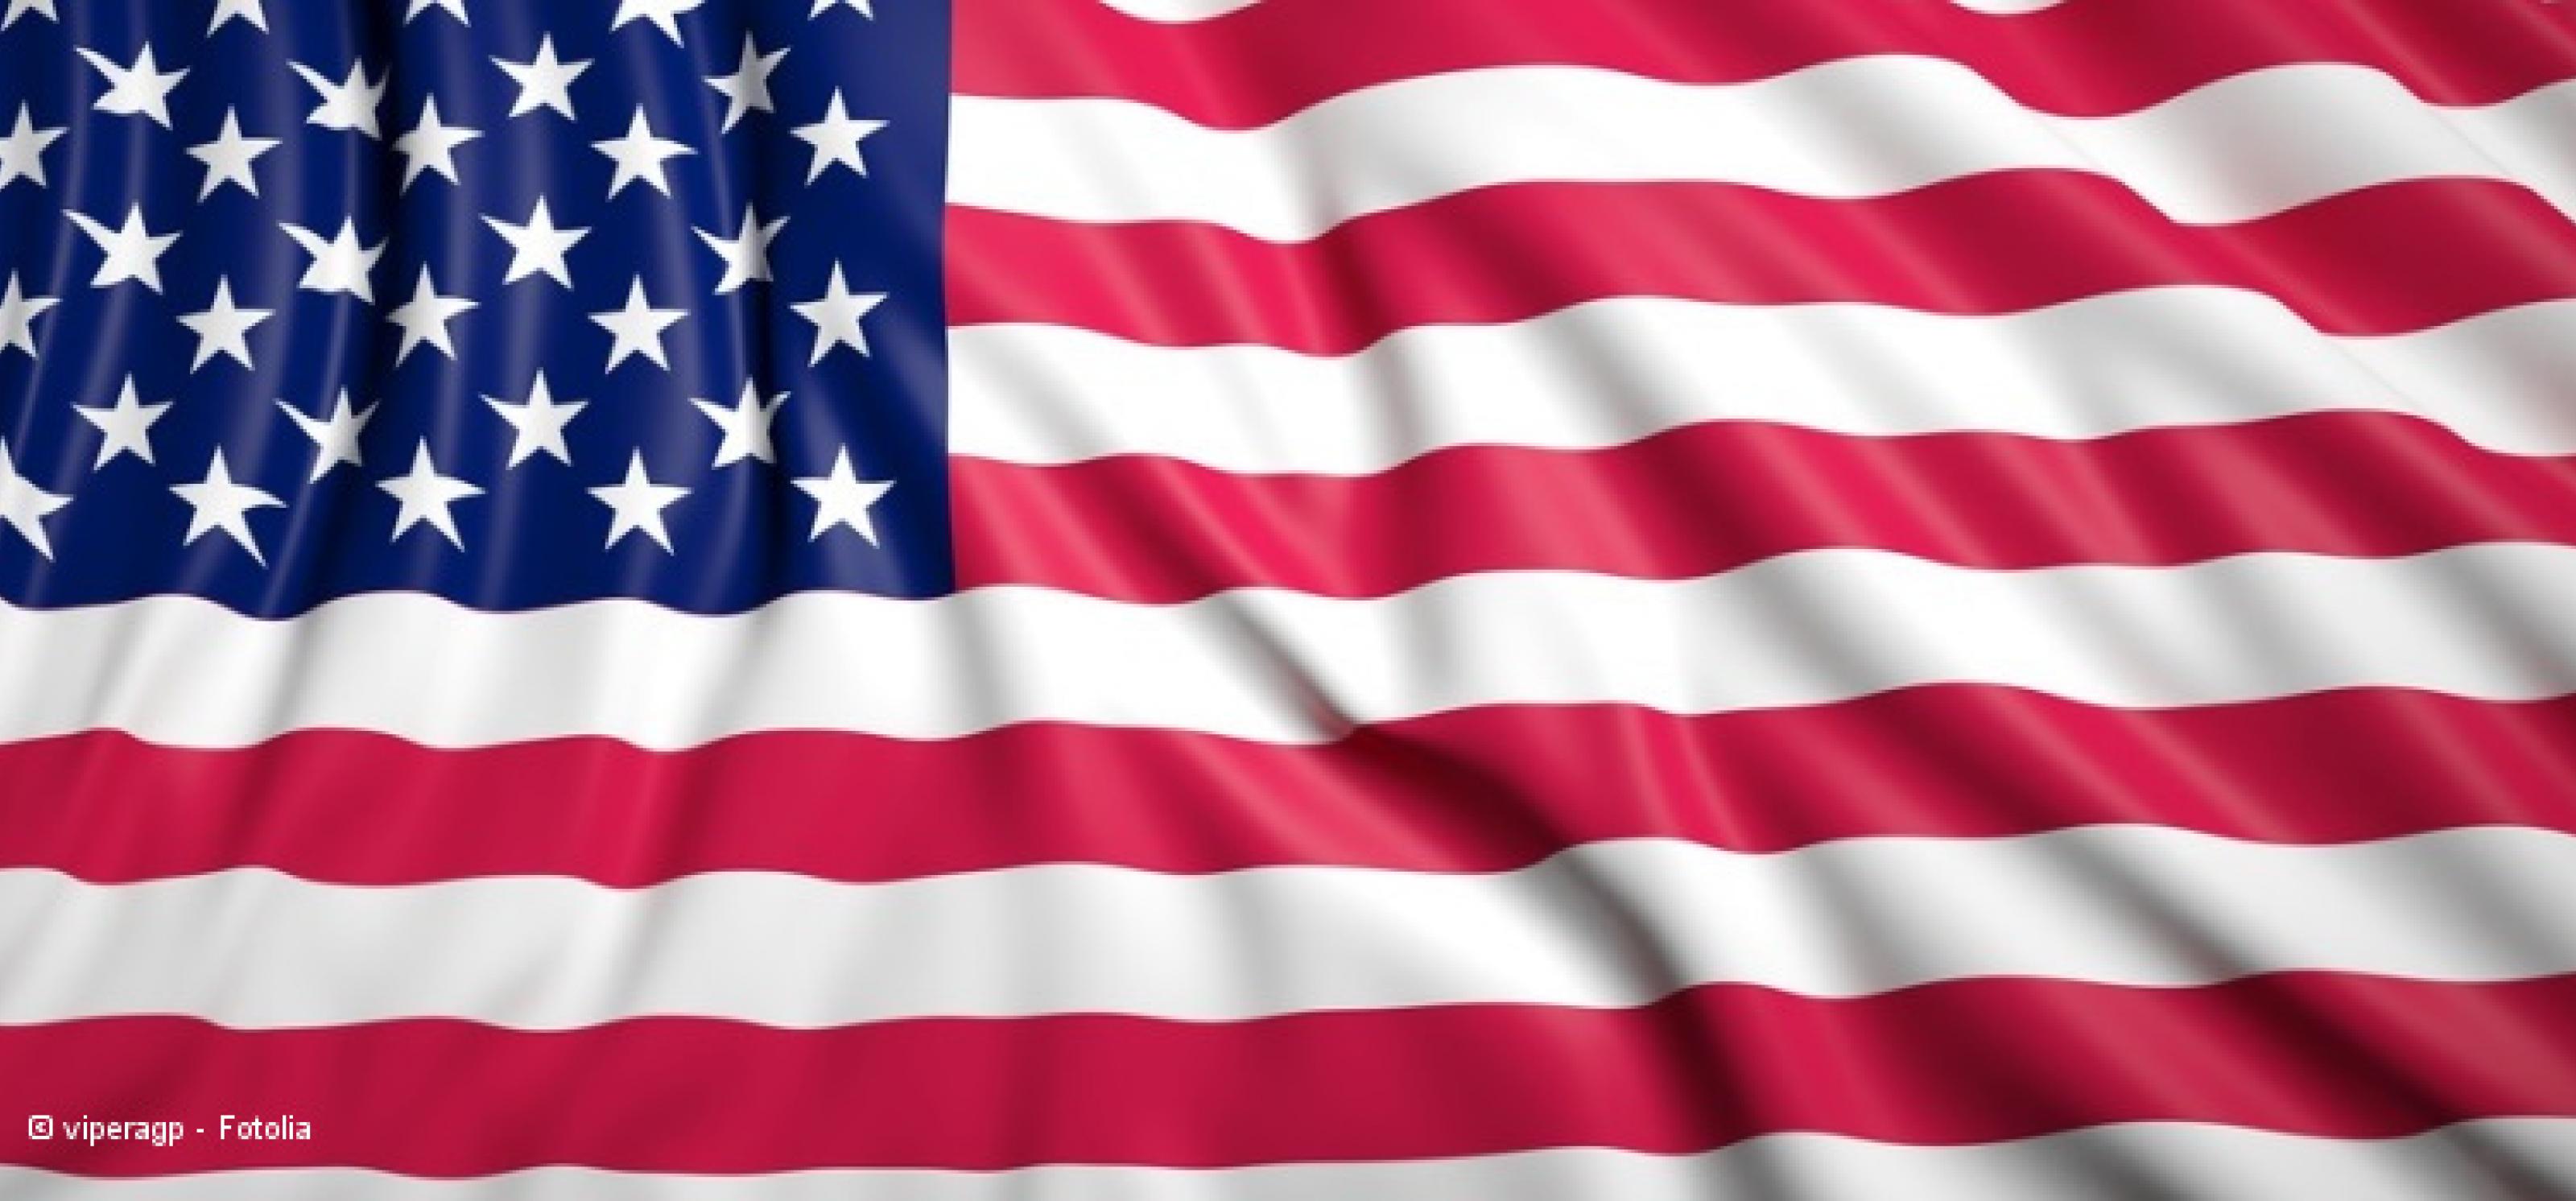 Flagge der USA mit Faltenwurf: rote und weiße Streifen und dazu links oben ein blaues Rechteck mit weißen Sternen